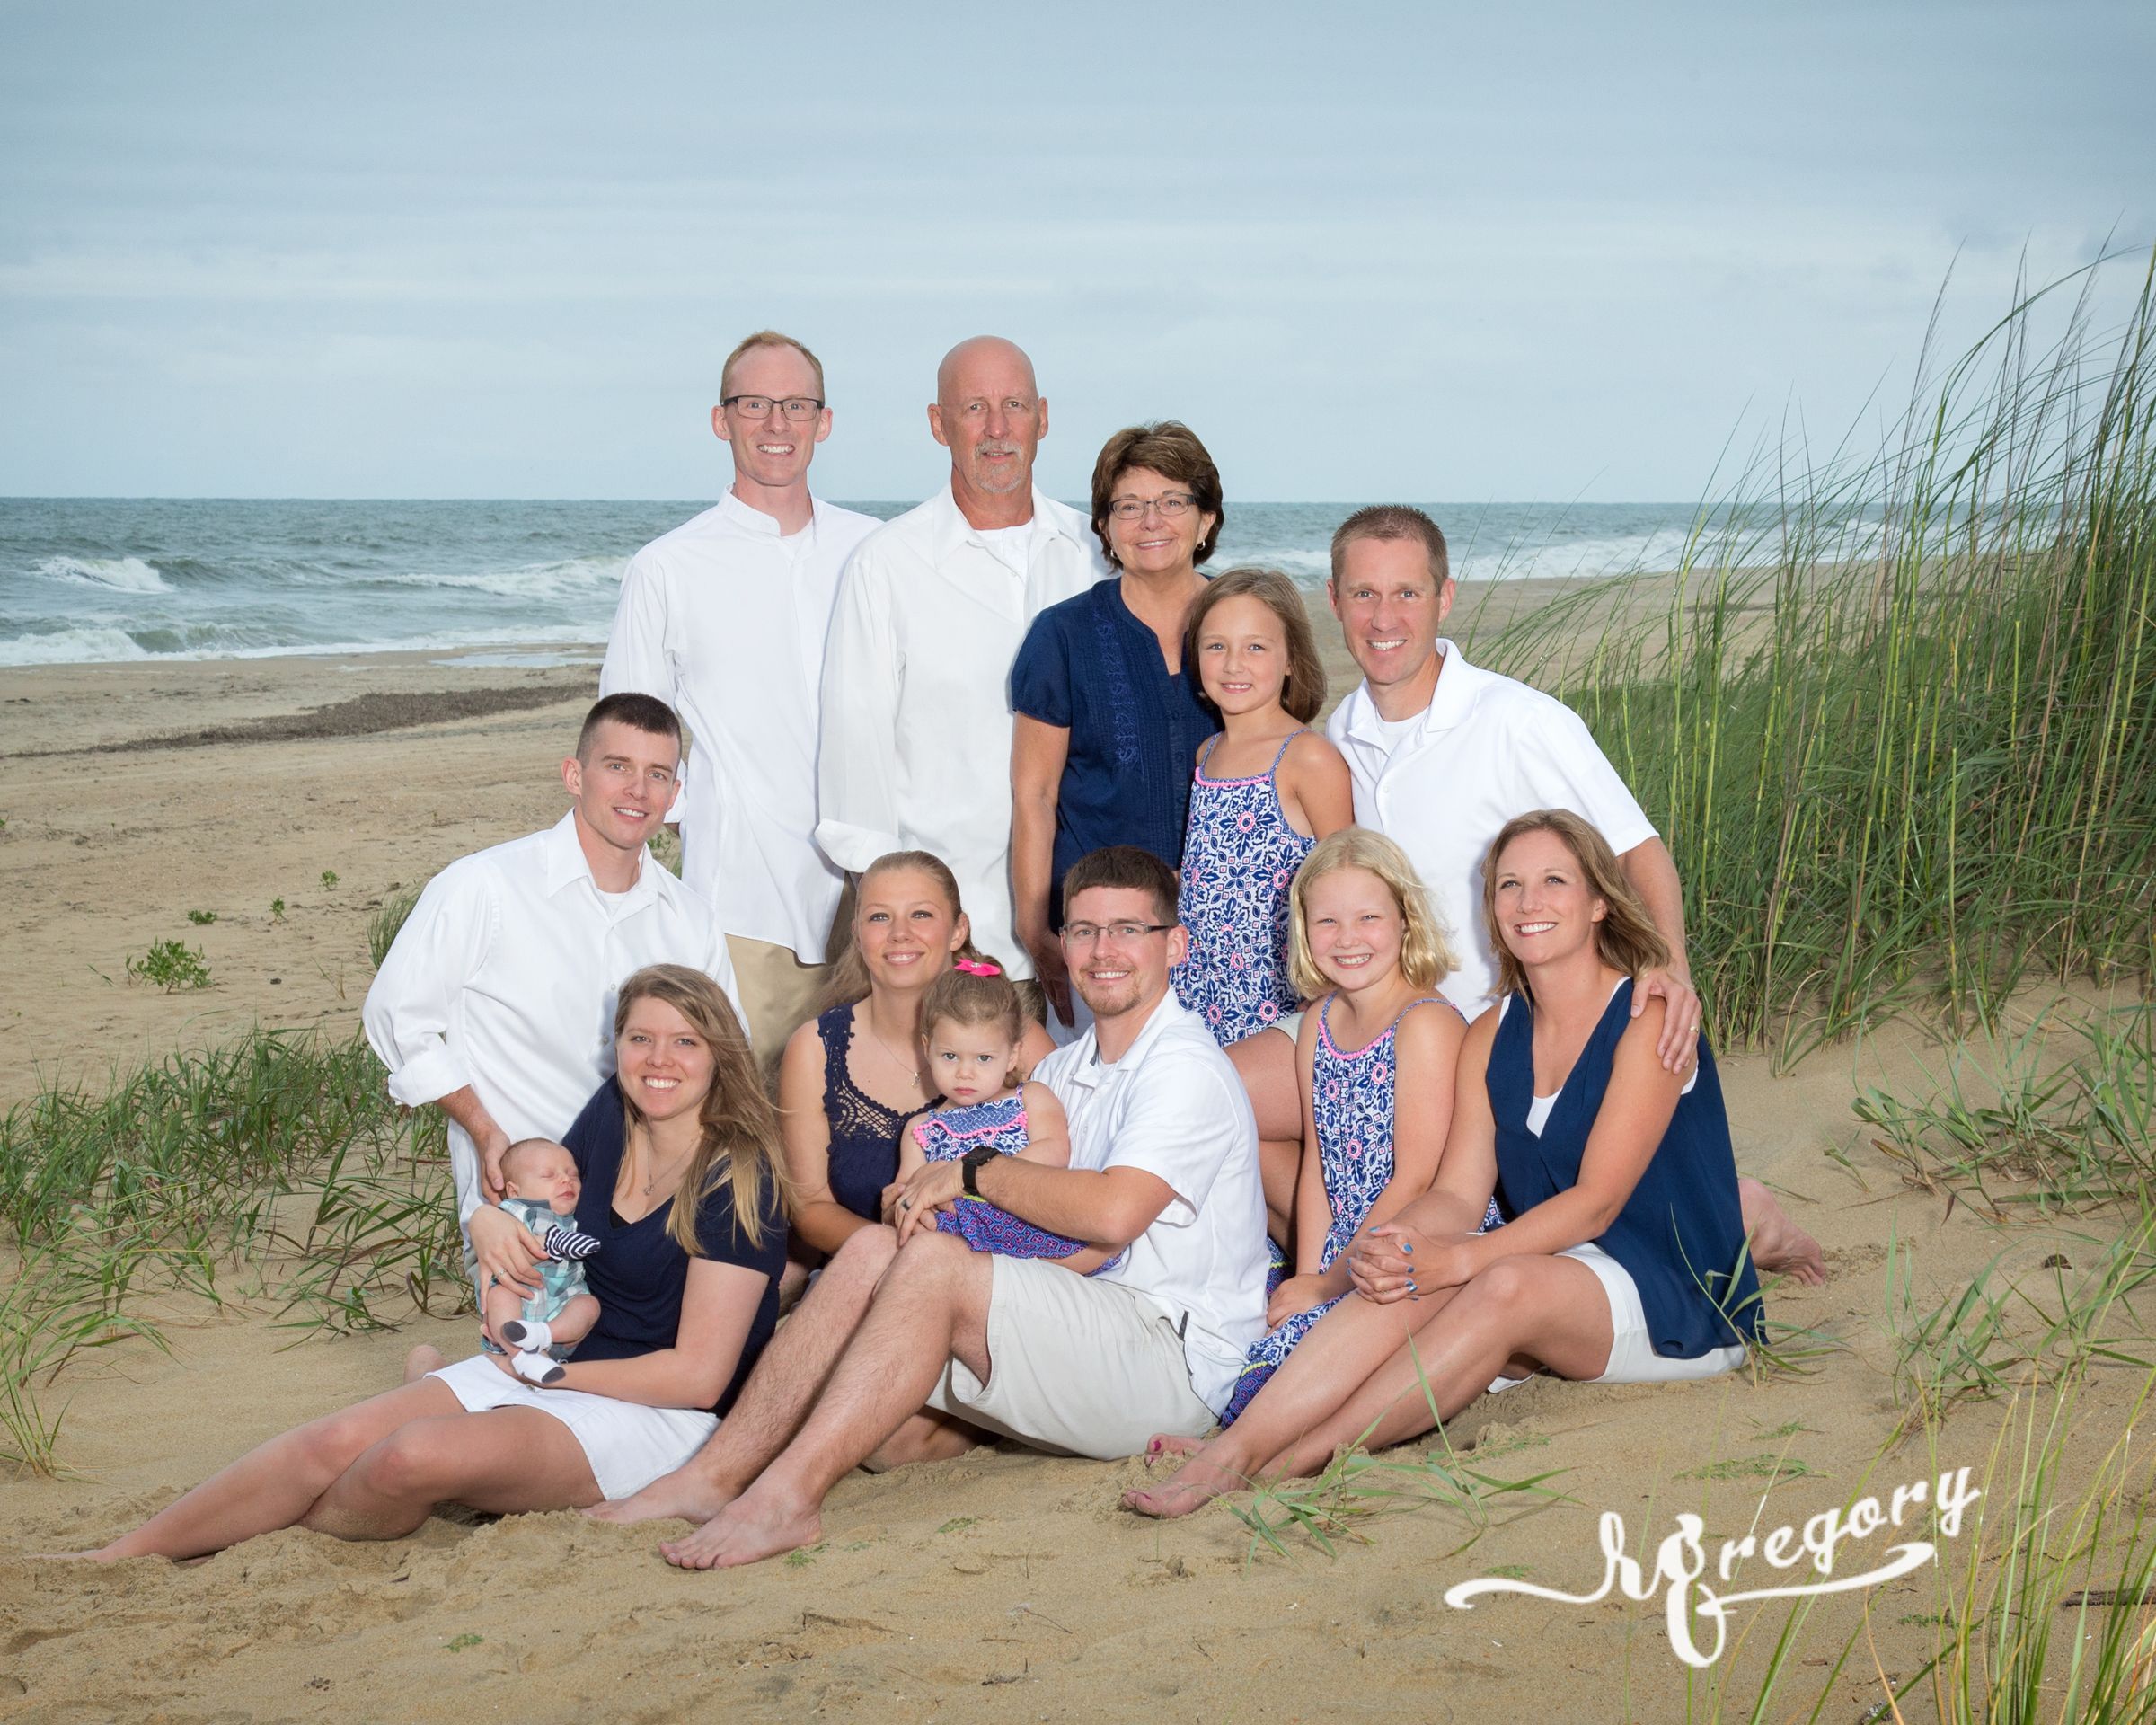 Rader family portrait on beach ocean in back